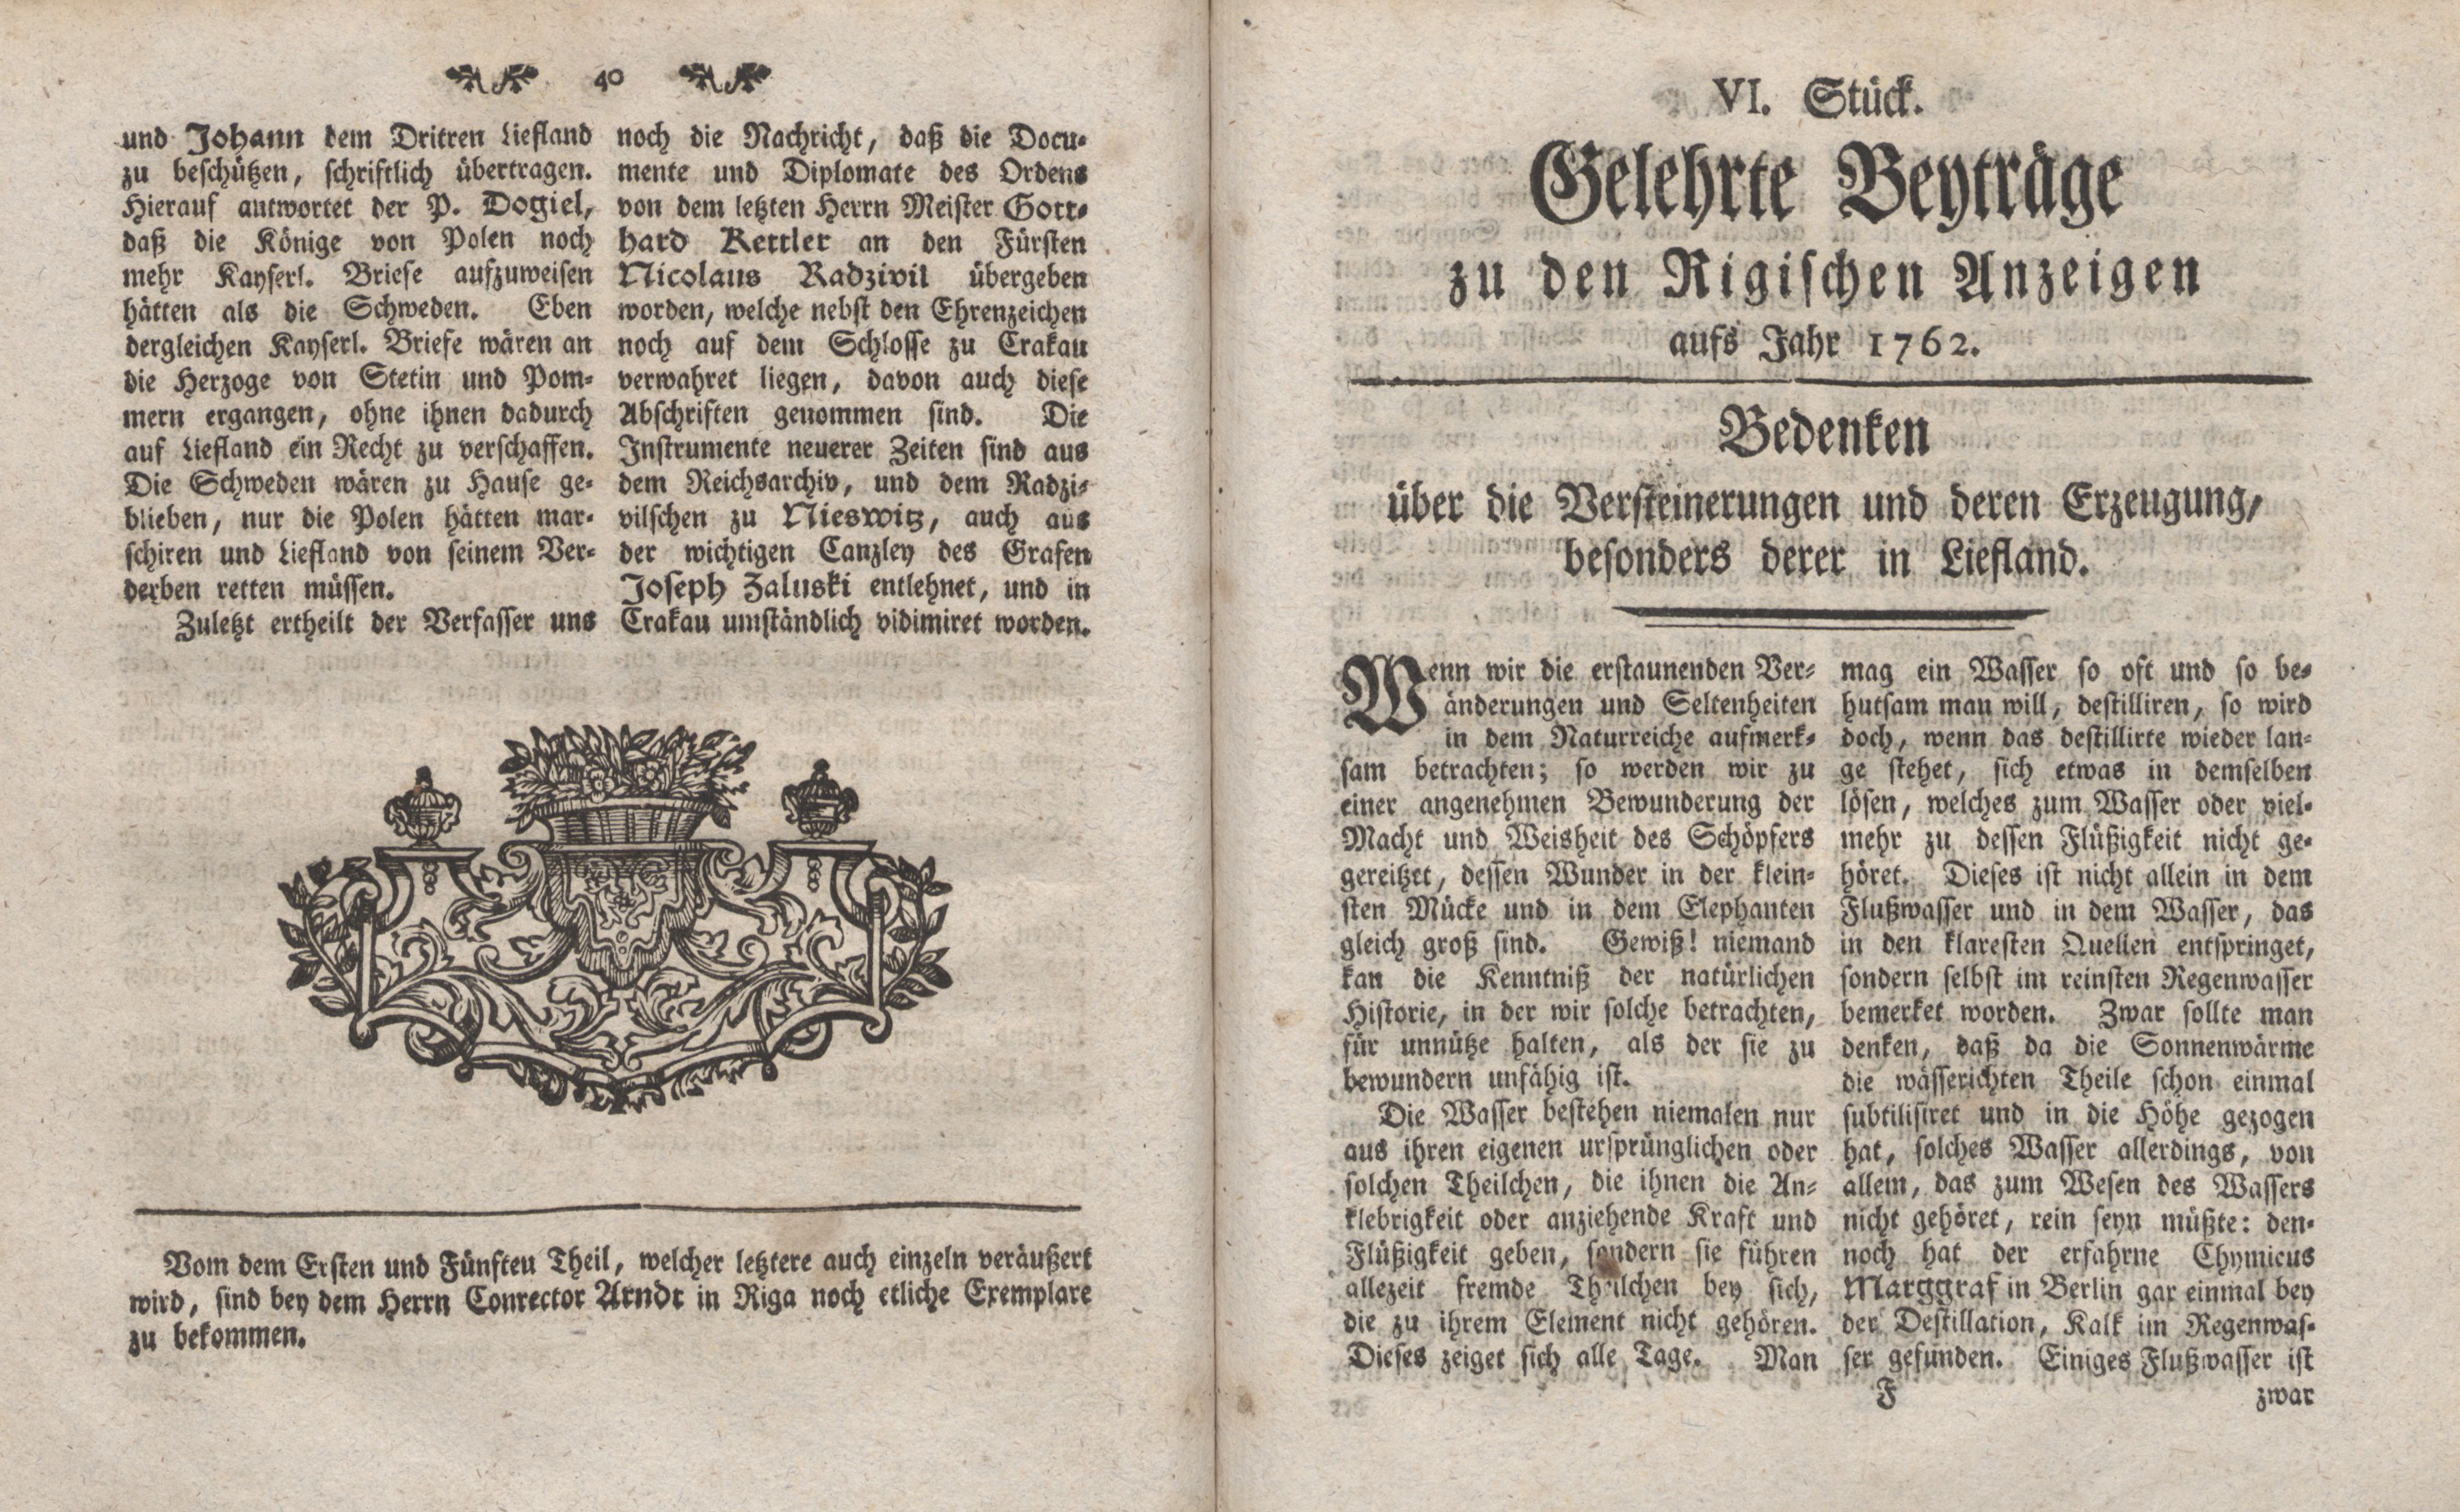 Gelehrte Beyträge zu den Rigischen Anzeigen 1762 (1762) | 21. (40-41) Haupttext